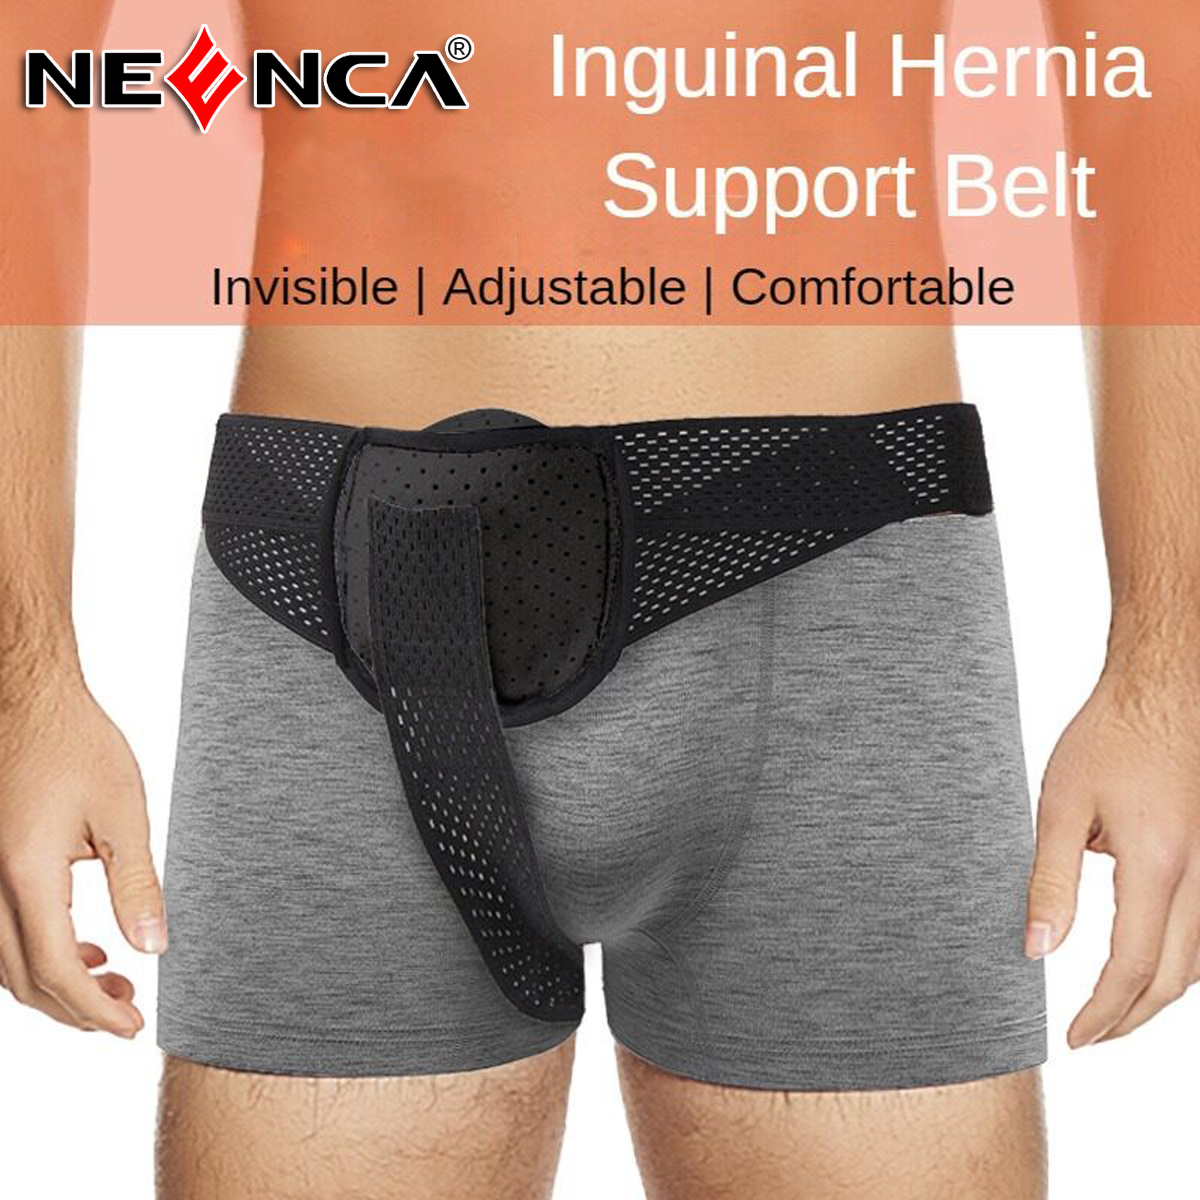 Groin Hernia Belt for Men and Women, Flexible Adjustable Hernia